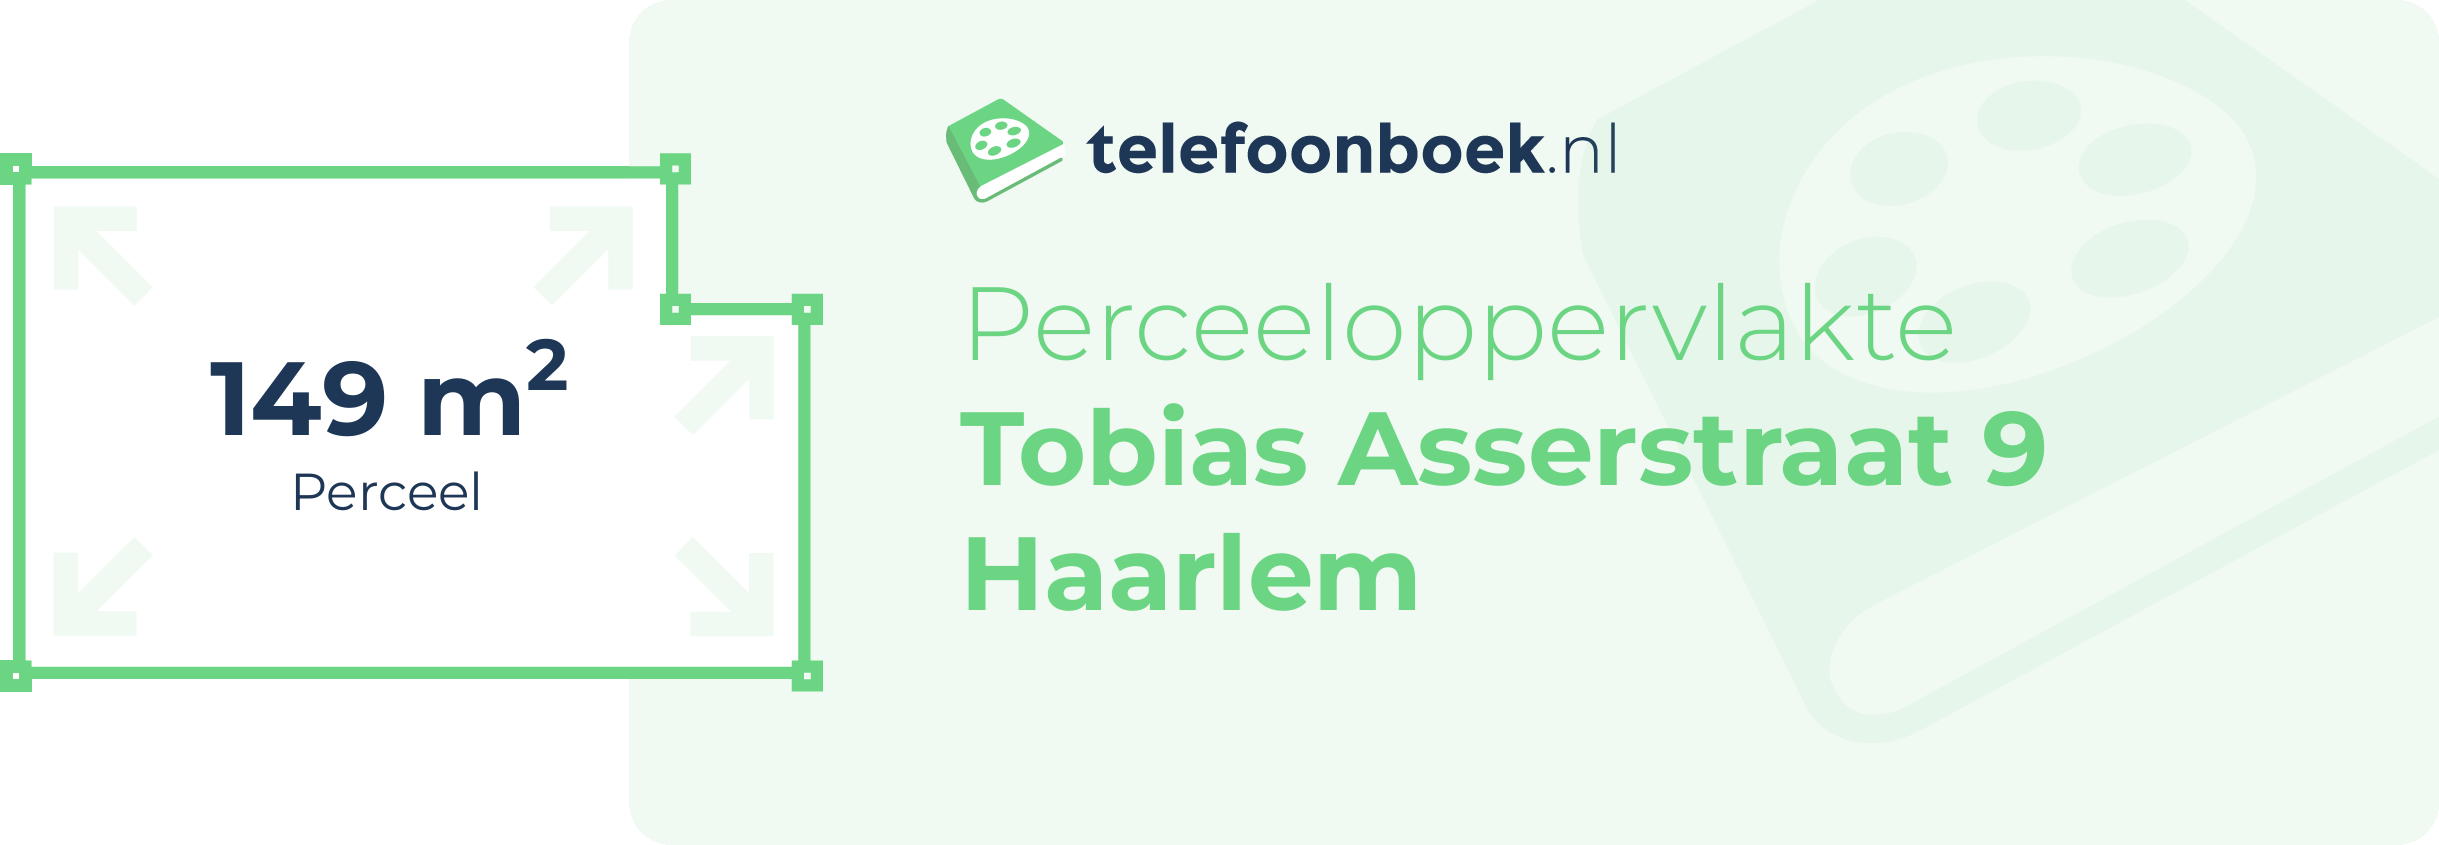 Perceeloppervlakte Tobias Asserstraat 9 Haarlem